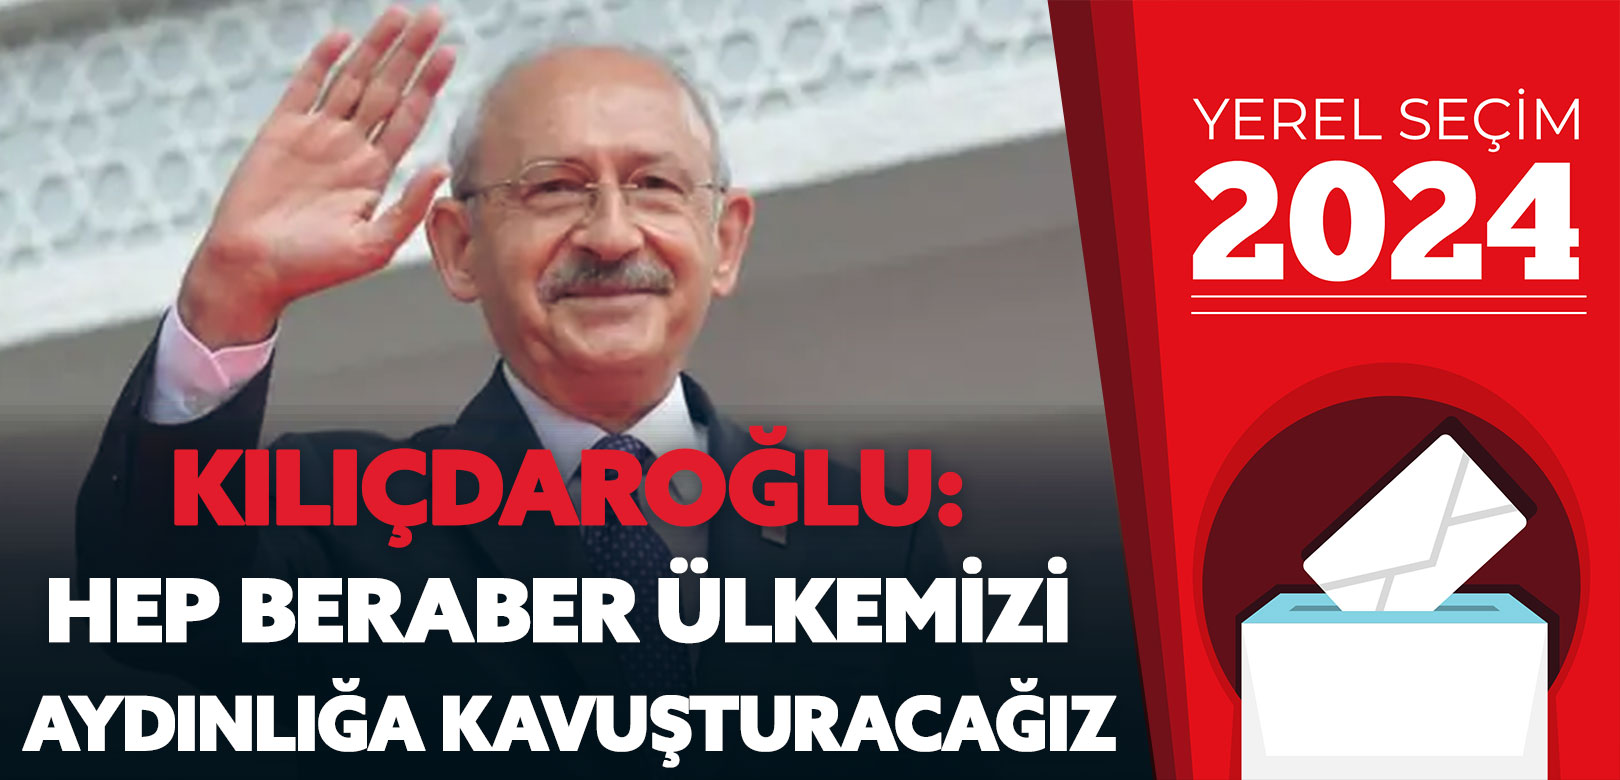 Kemal Kılıçdaroğlu: Bir olup mücadelemizi sürdüreceğiz, hep beraber ülkemizi aydınlığa kavuşturacağız